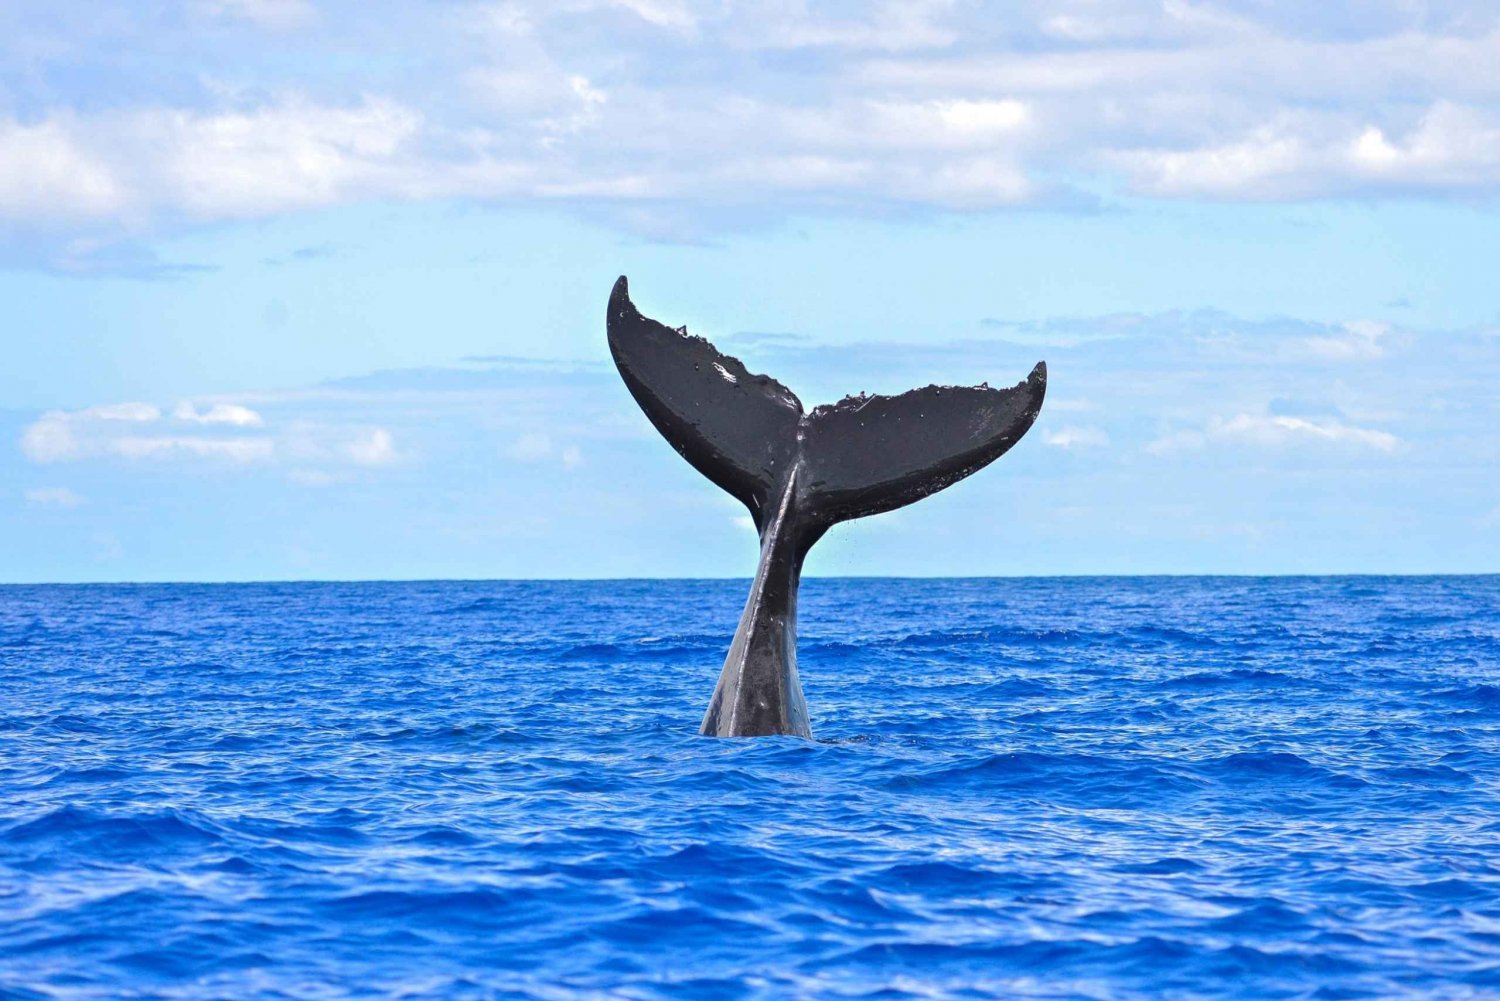 Maui Sud: Crociera per avvistare le balene a bordo di Calypso